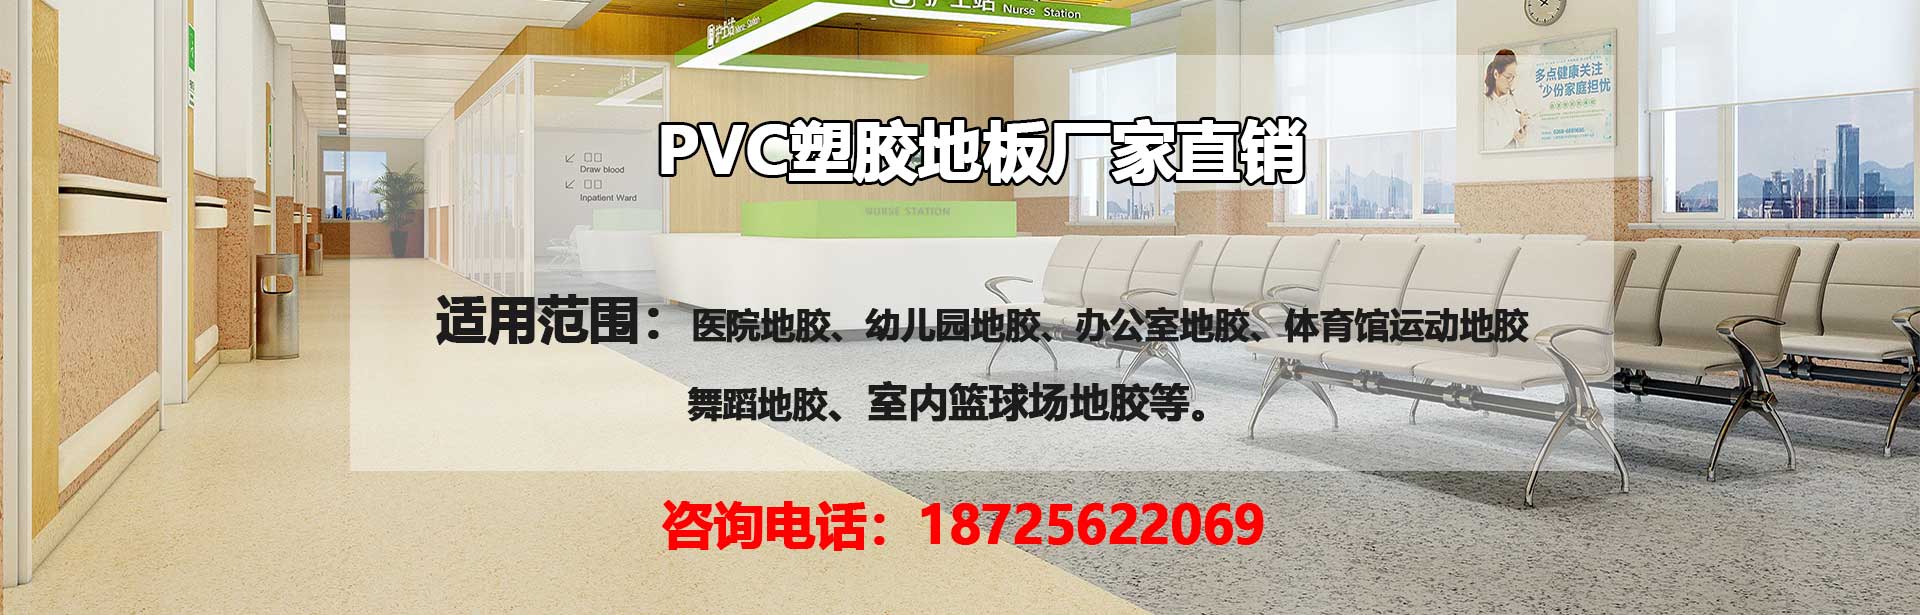 昆明PVC塑胶地板